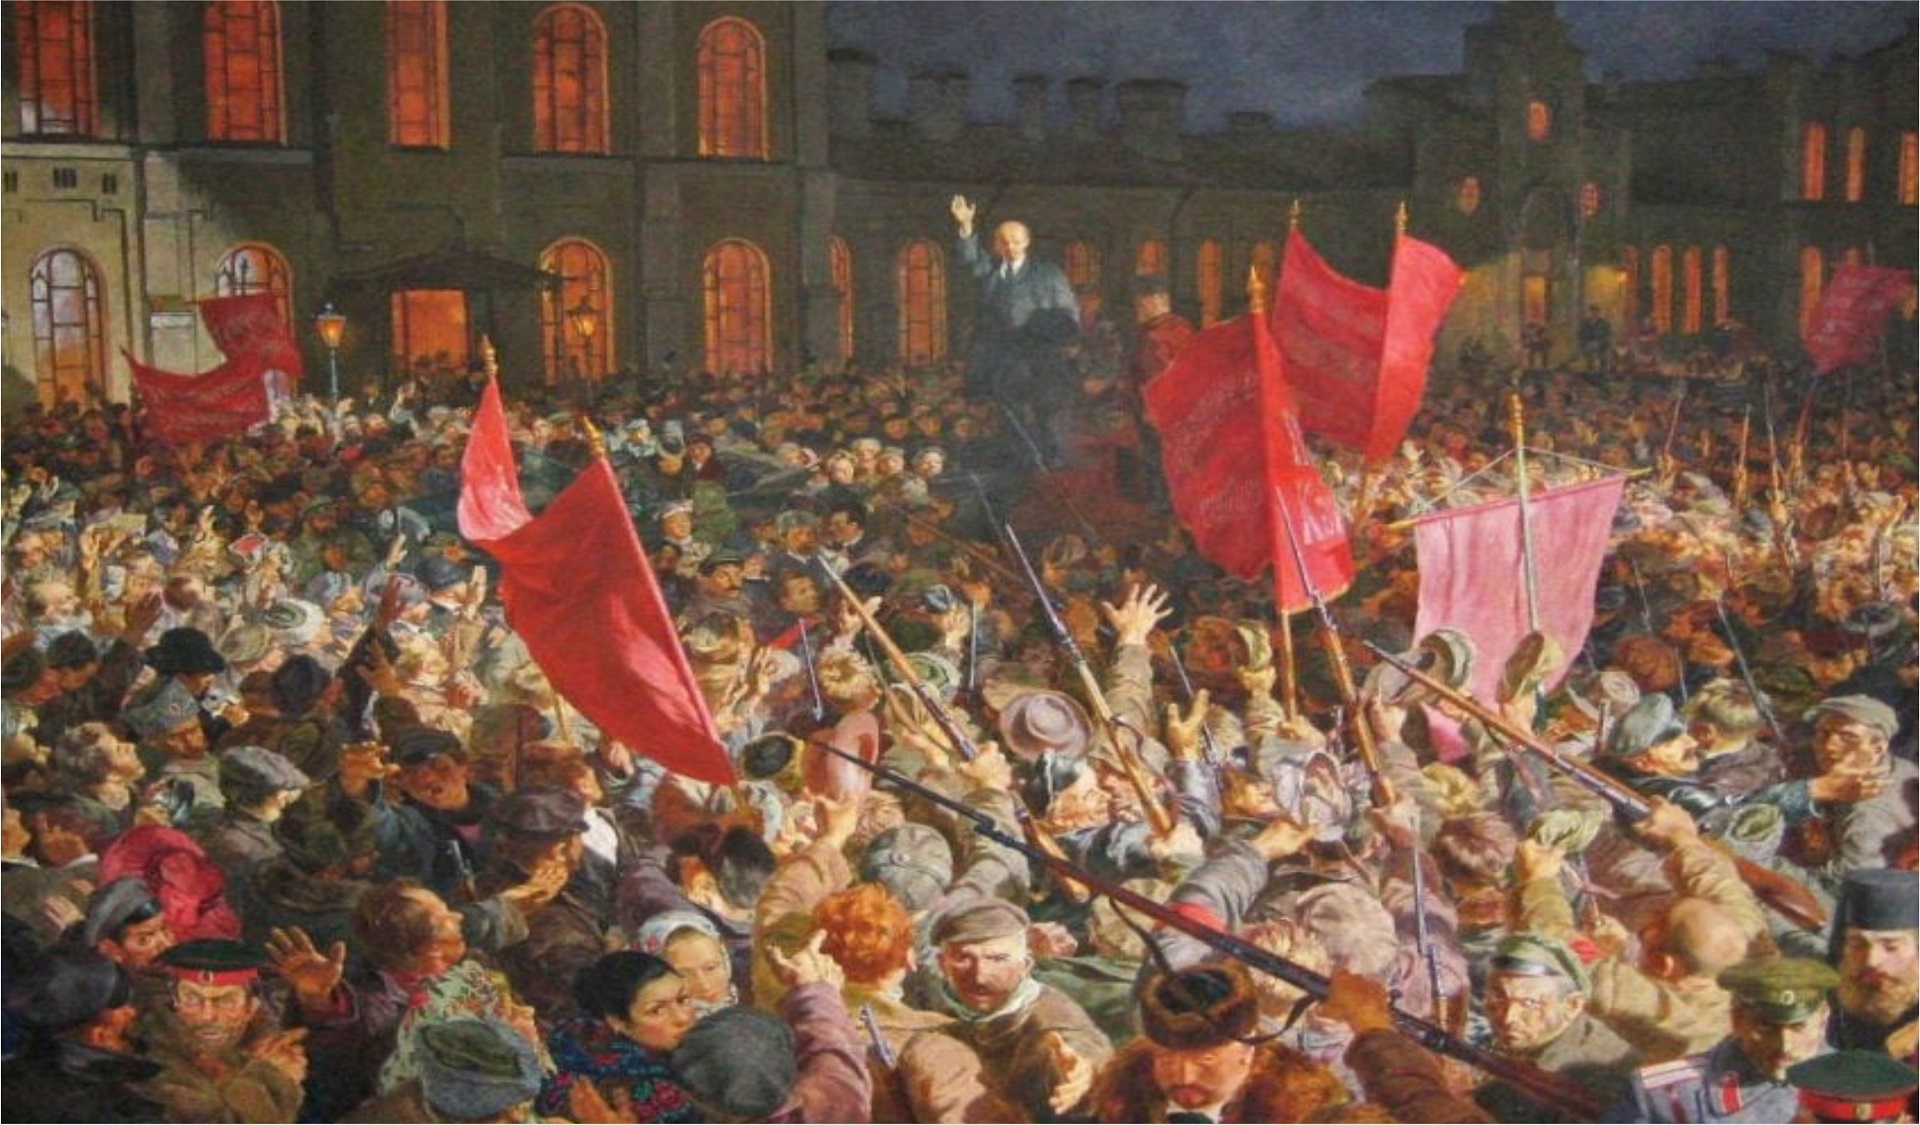 من 25 أكتوبر 1917 في روسيا الى 17 ديسمبر2010 في تونس : كيف تلاحق الثورةُ الروسيةُ يسار الثورةَ التونسيةَ ذُهانيّا ؟